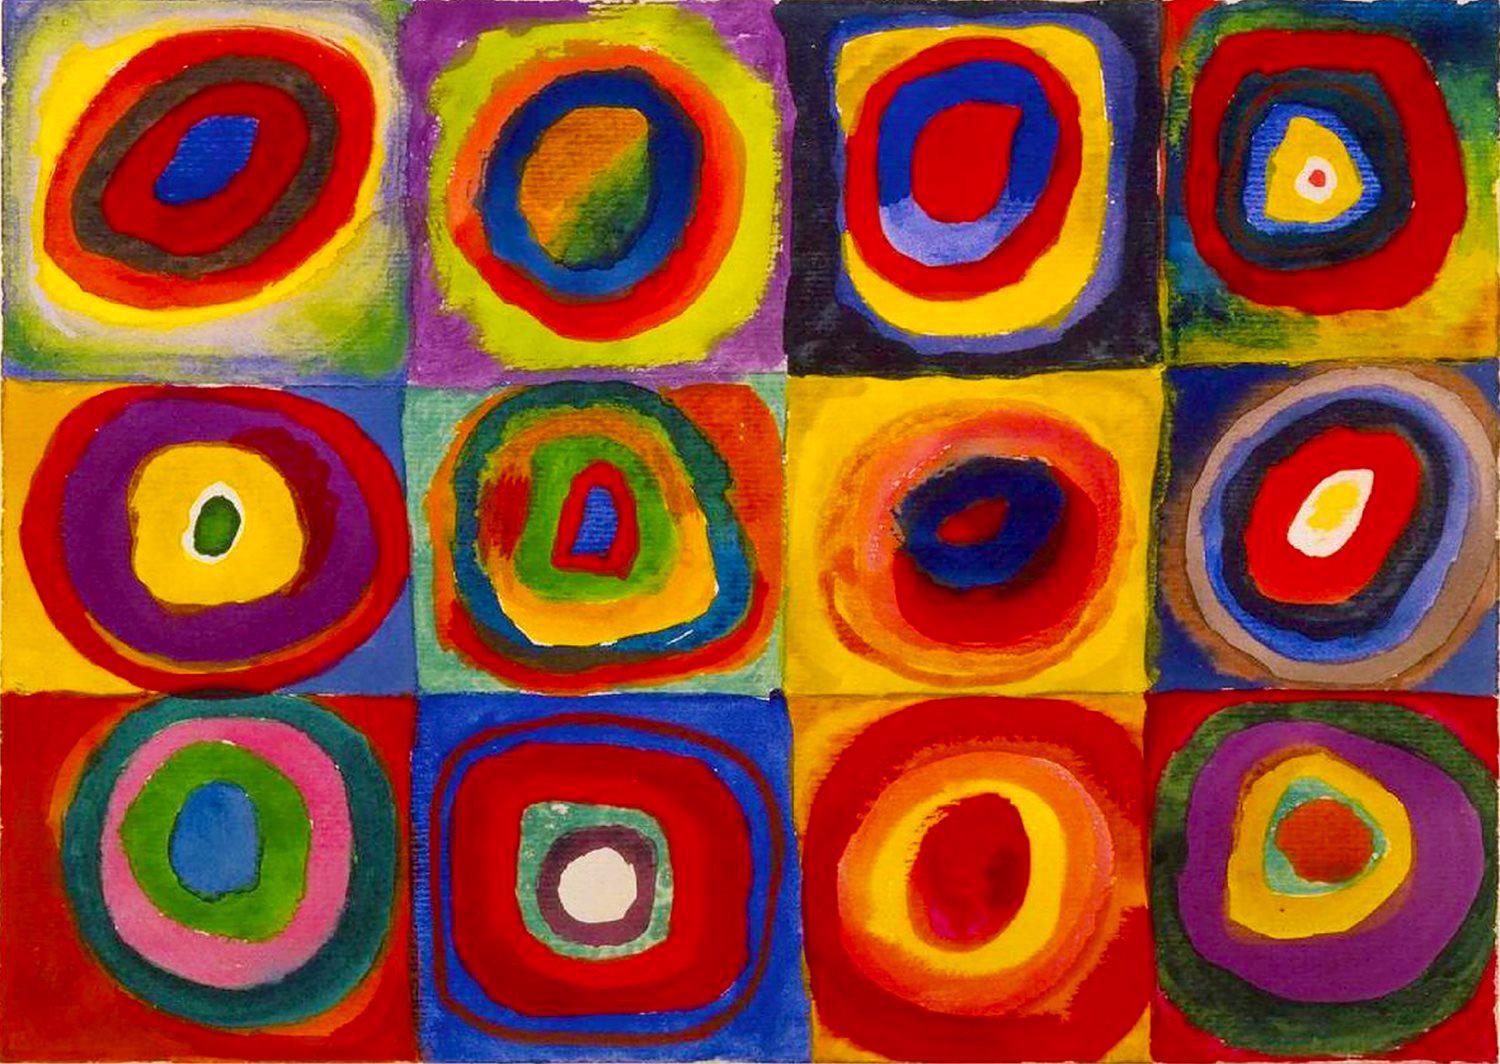 Puzzle Étude des couleurs - Carrés avec cercles concentriques, Wassily Kandinsky